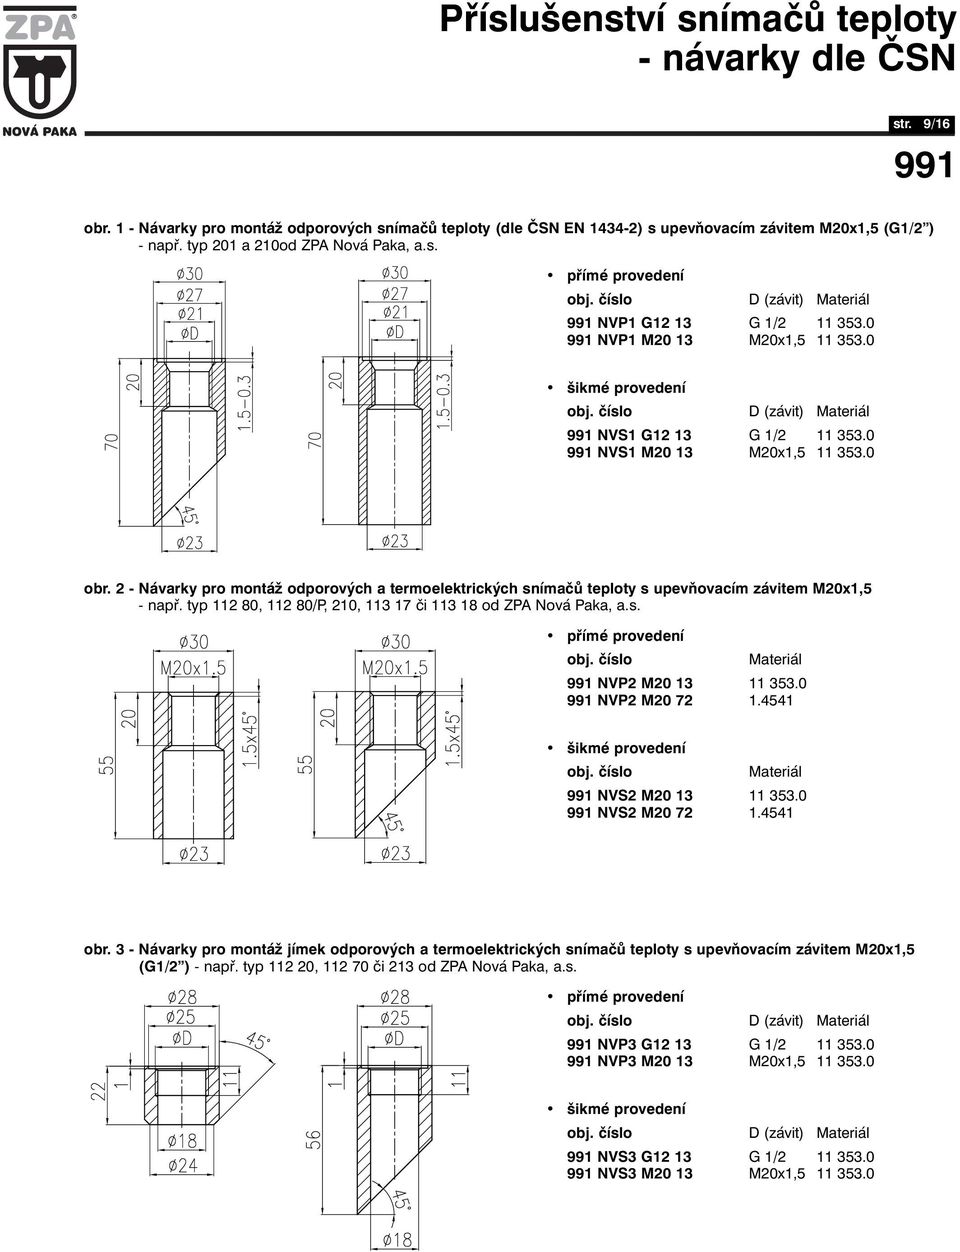 - Návarky pro montáž odporových a termoelektrických snímačů teploty s upevňovacím závitem M0x,5 obr. - - např. typ 80, 80/P, 0, 3 7 či 3 8 od ZPA Nová Paka, a.s. přímé provedení obj.